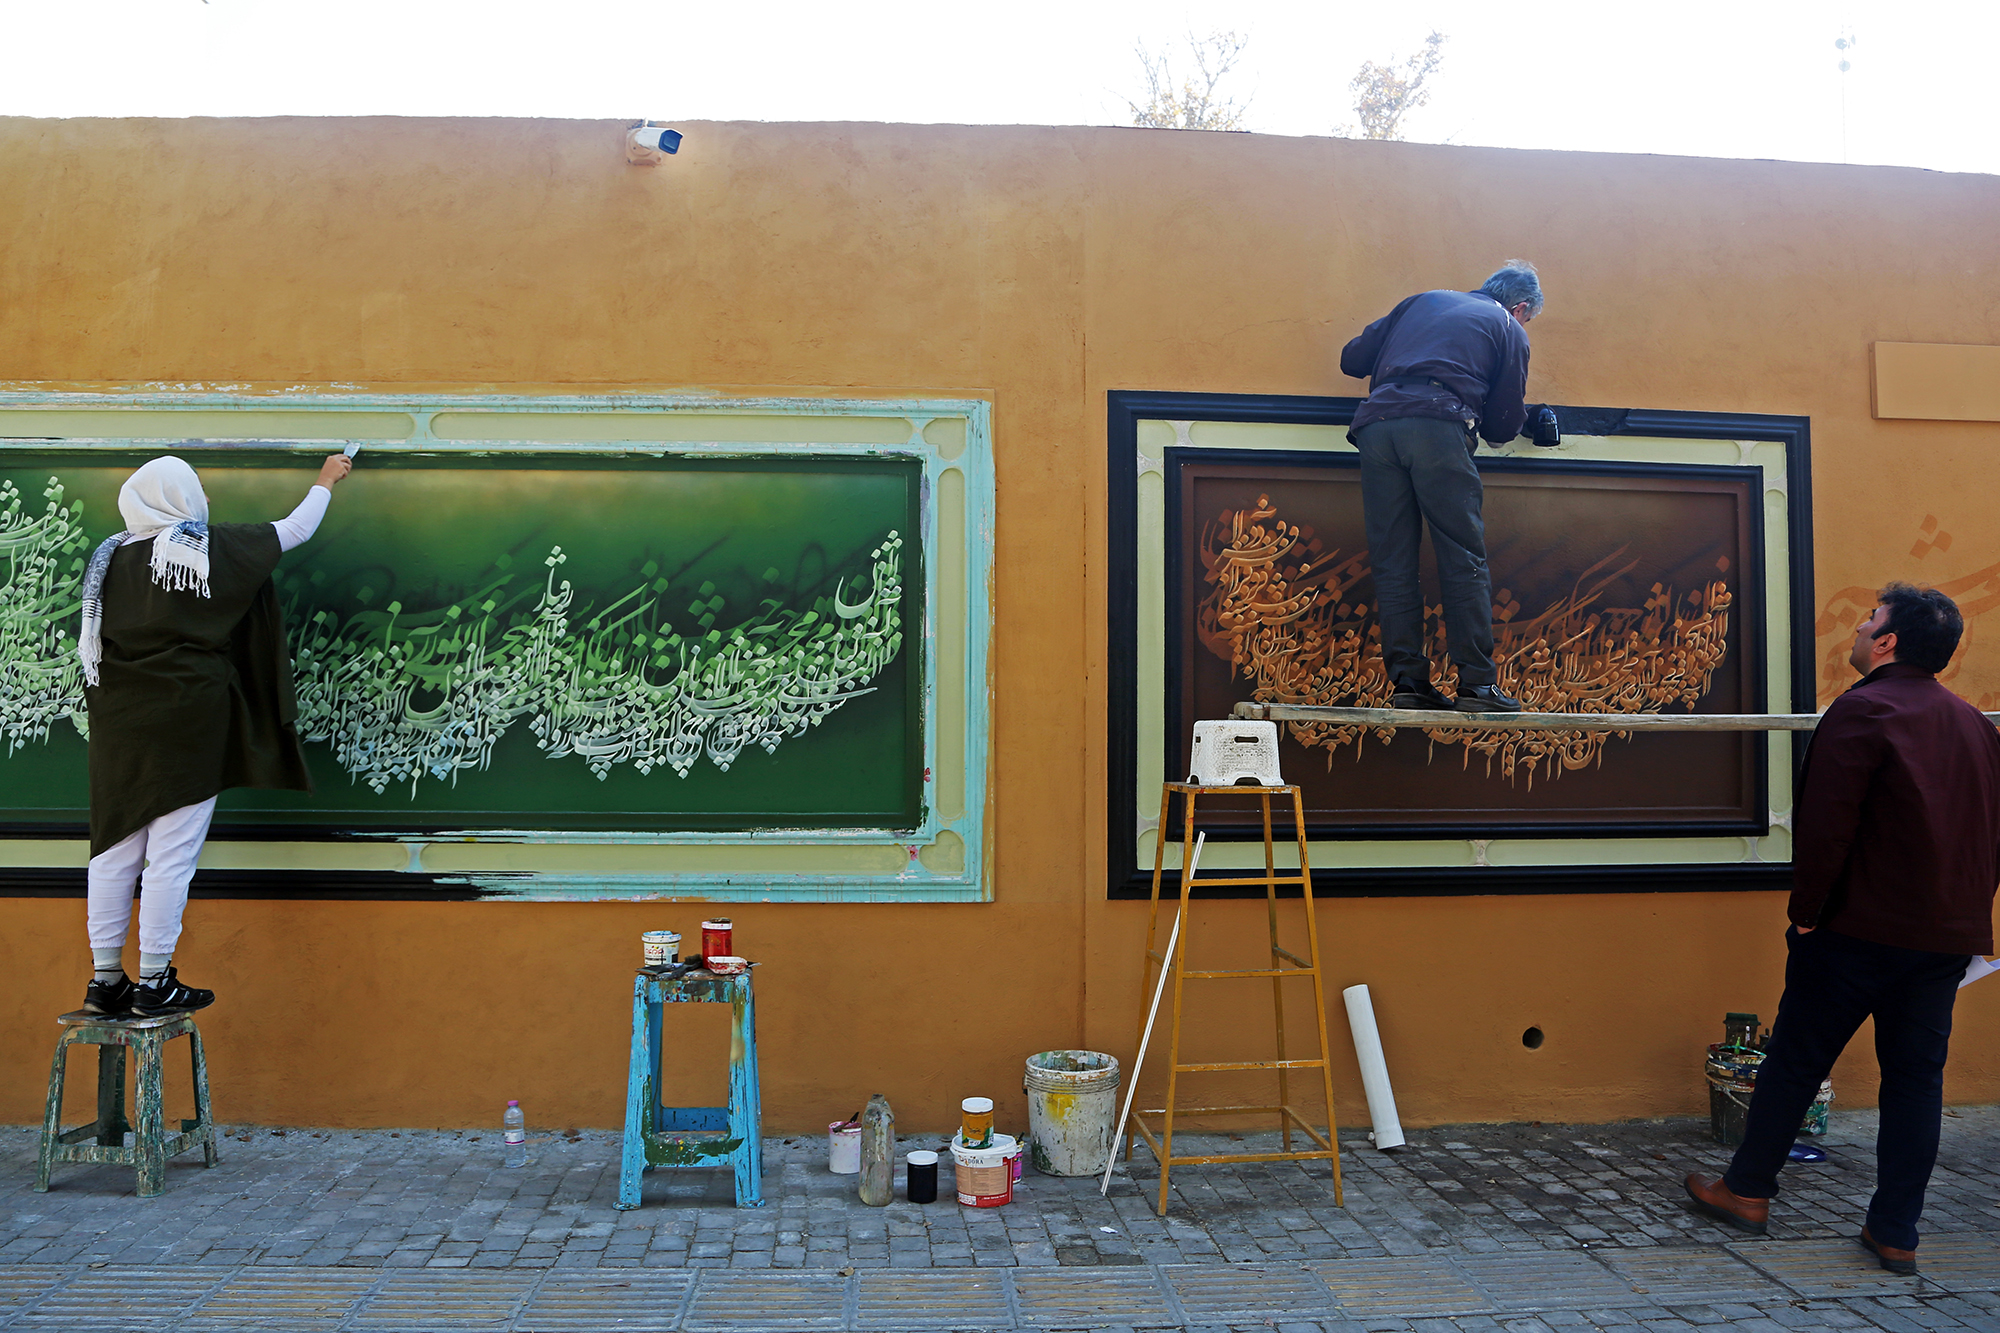 زیباسازی فضلی شهری شیراز با نقاشی های فاخر – عکاس: عباس امیری